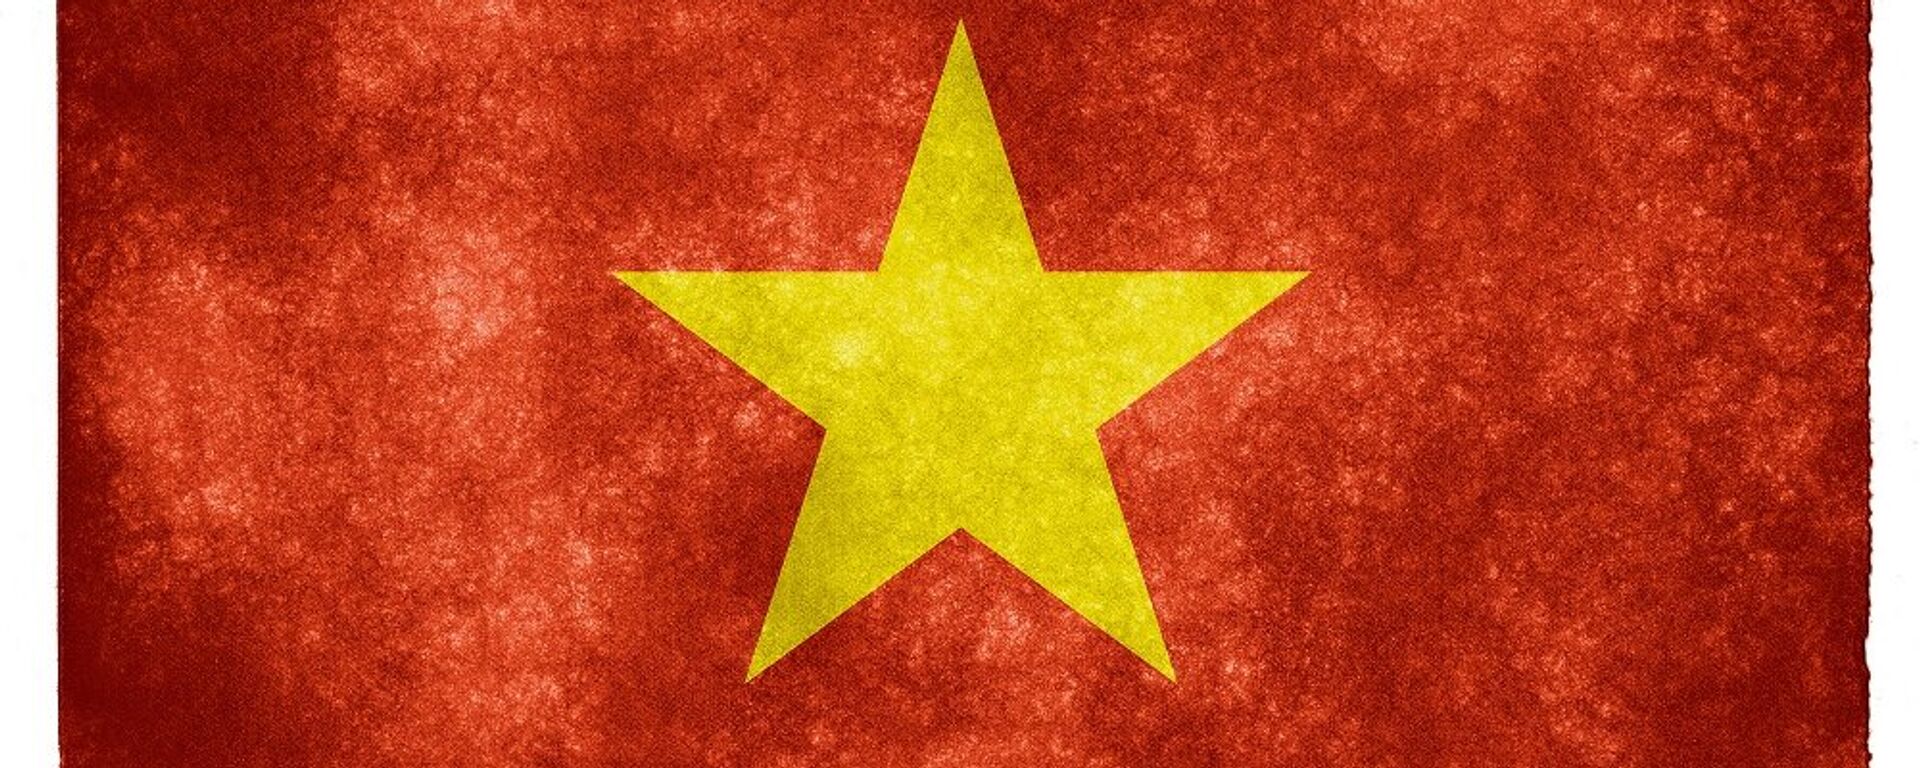 Quốc kỳ Việt Nam - Sputnik Việt Nam, 1920, 10.09.2015